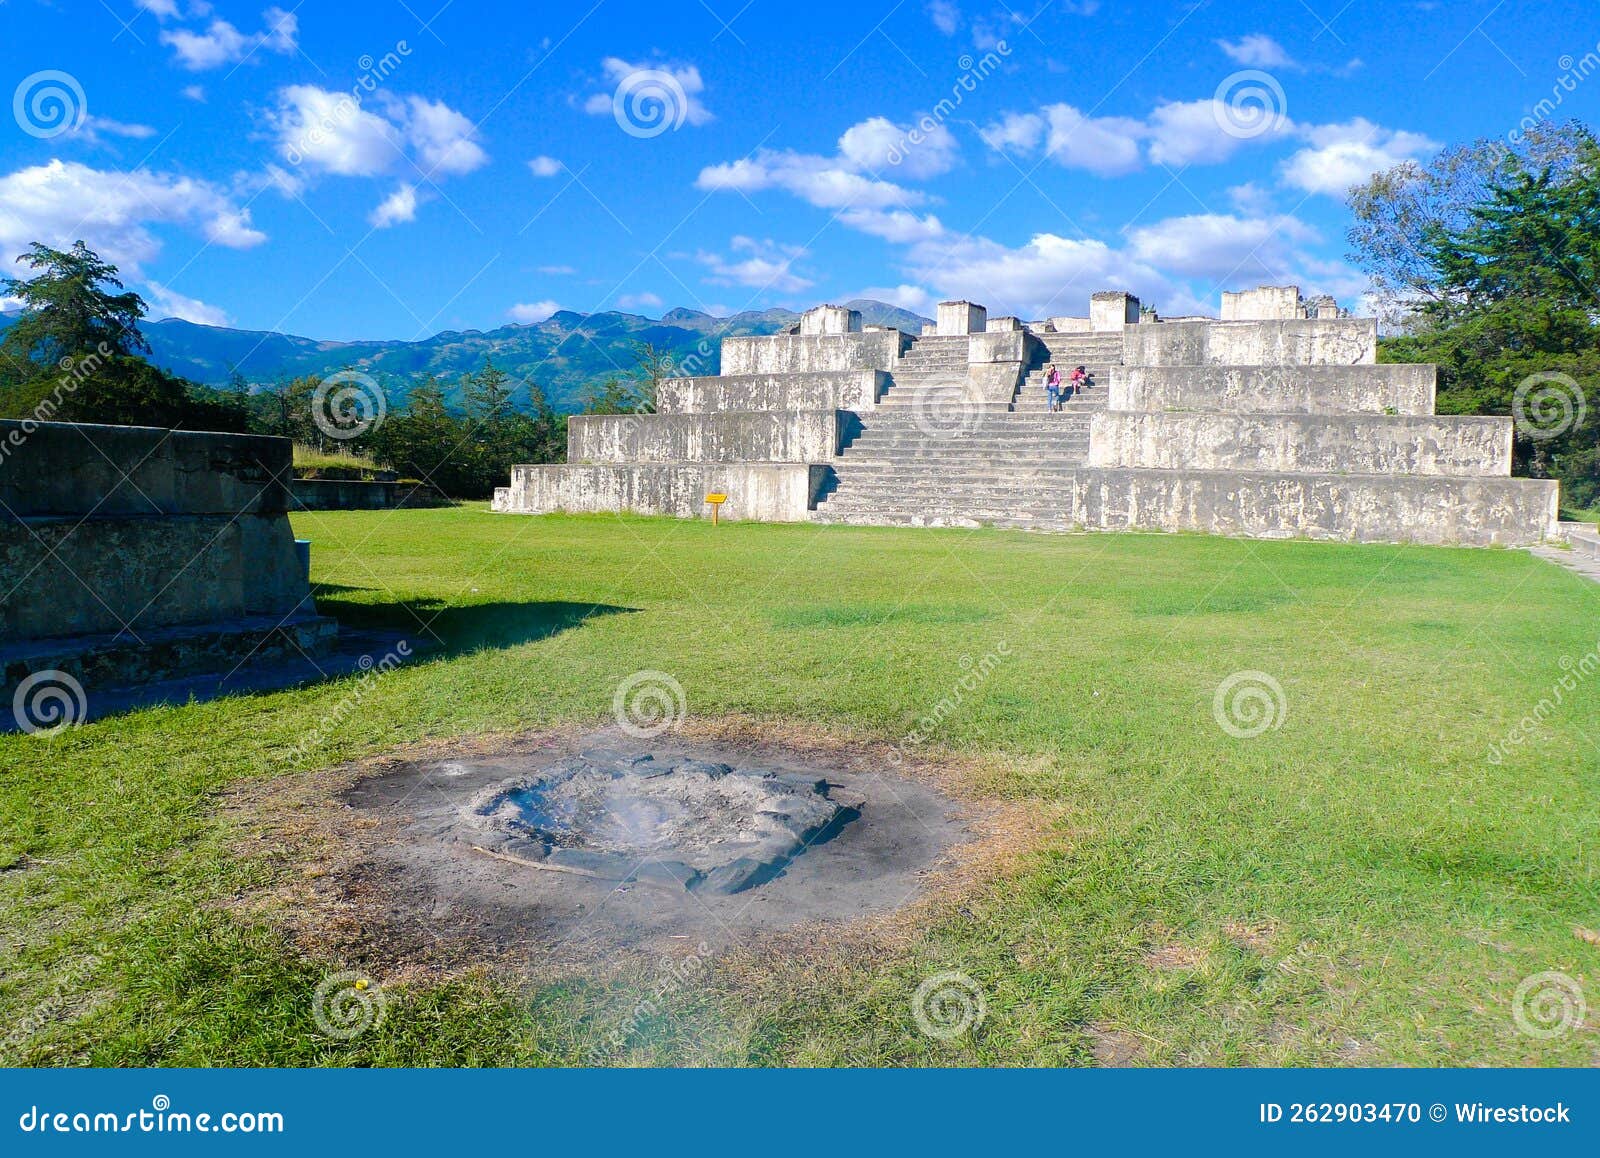 zaculeu mayan ruins in huehuetenango